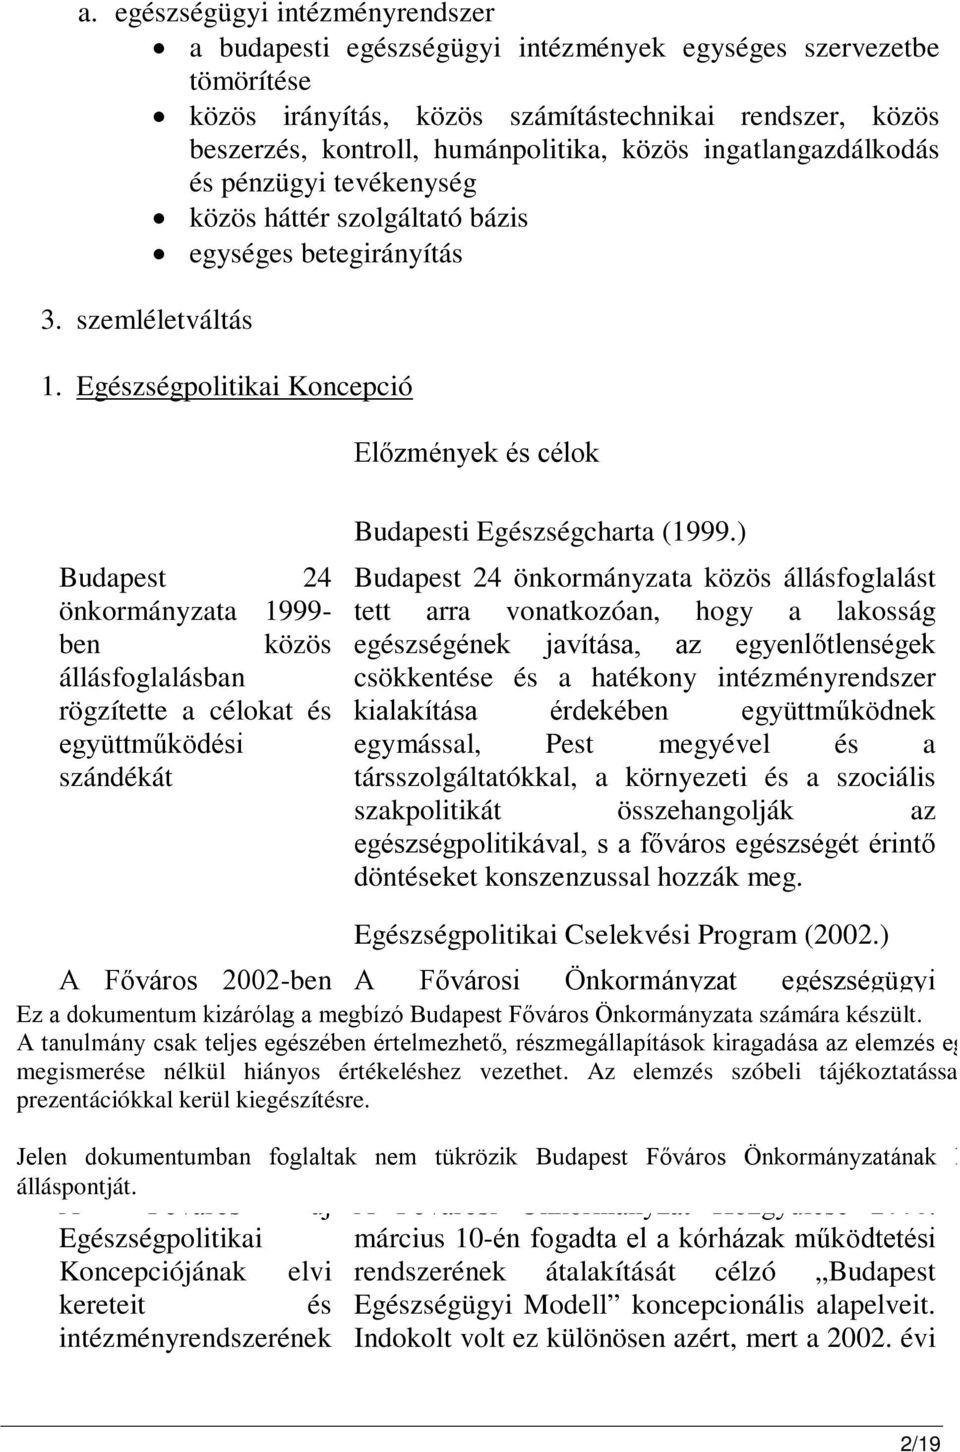 Egészségpolitikai Koncepció Előzmények és célok Budapest 24 önkormányzata 1999- ben közös állásfoglalásban rögzítette a célokat és együttműködési szándékát Budapesti Egészségcharta (1999.